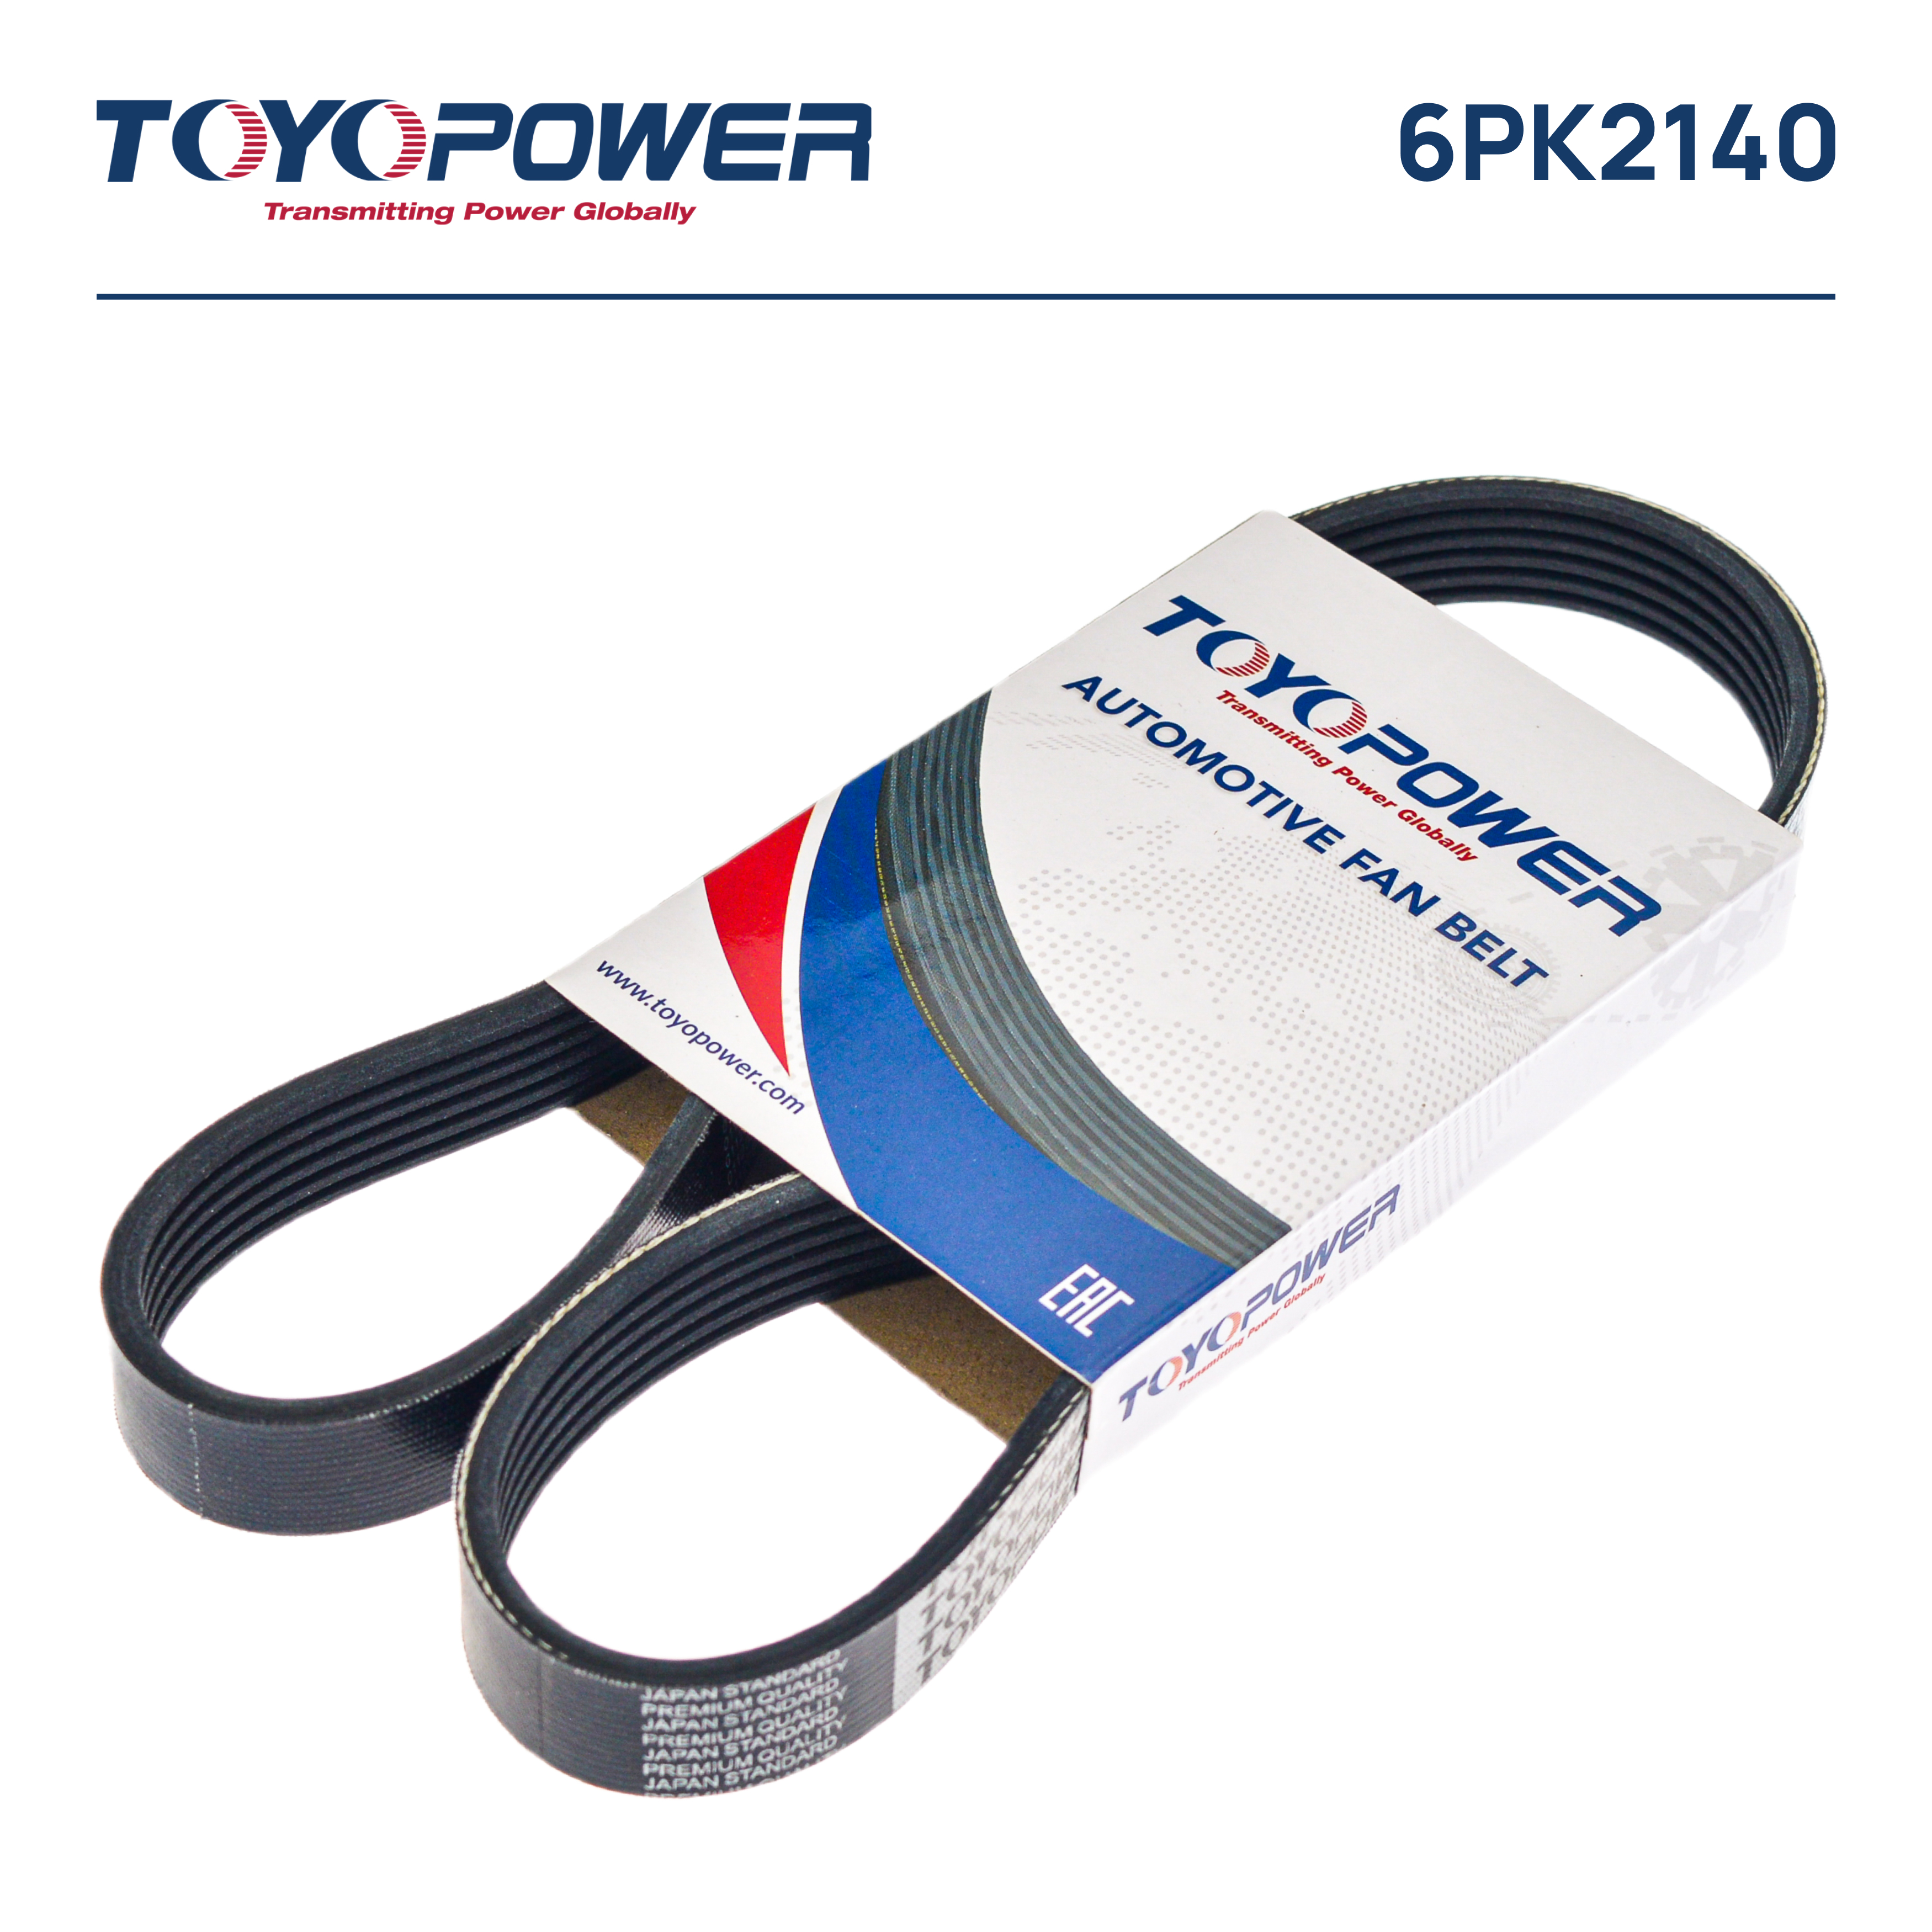 Ремень поликлиновый - Toyopower 6PK2140